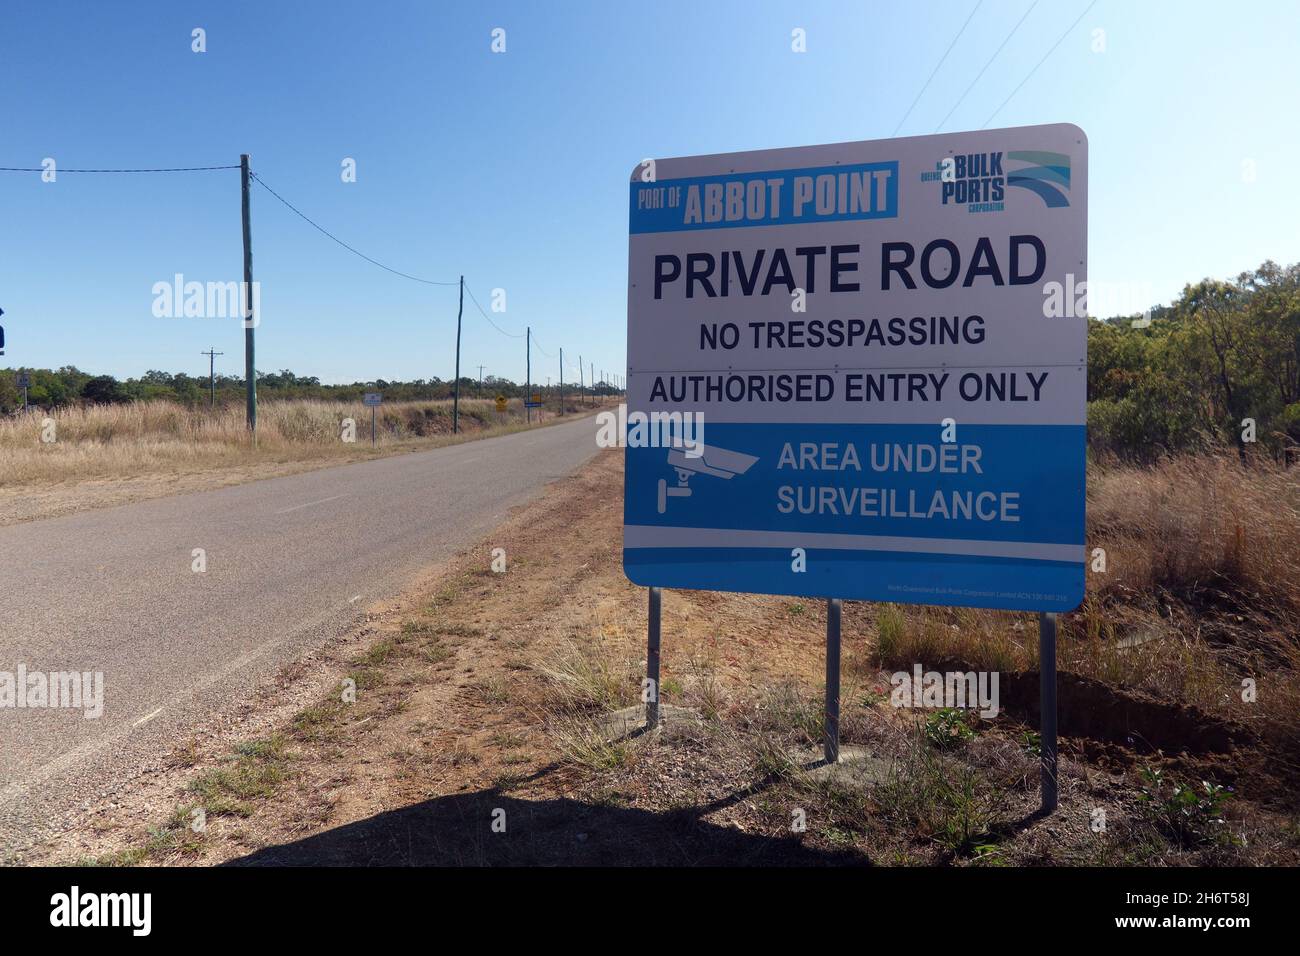 Signez un avertissement d'entrée interdite au port d'Abbot point, site d'un terminal houillère controversé, au nord de Bowen, Queensland, Australie.Pas de PR Banque D'Images